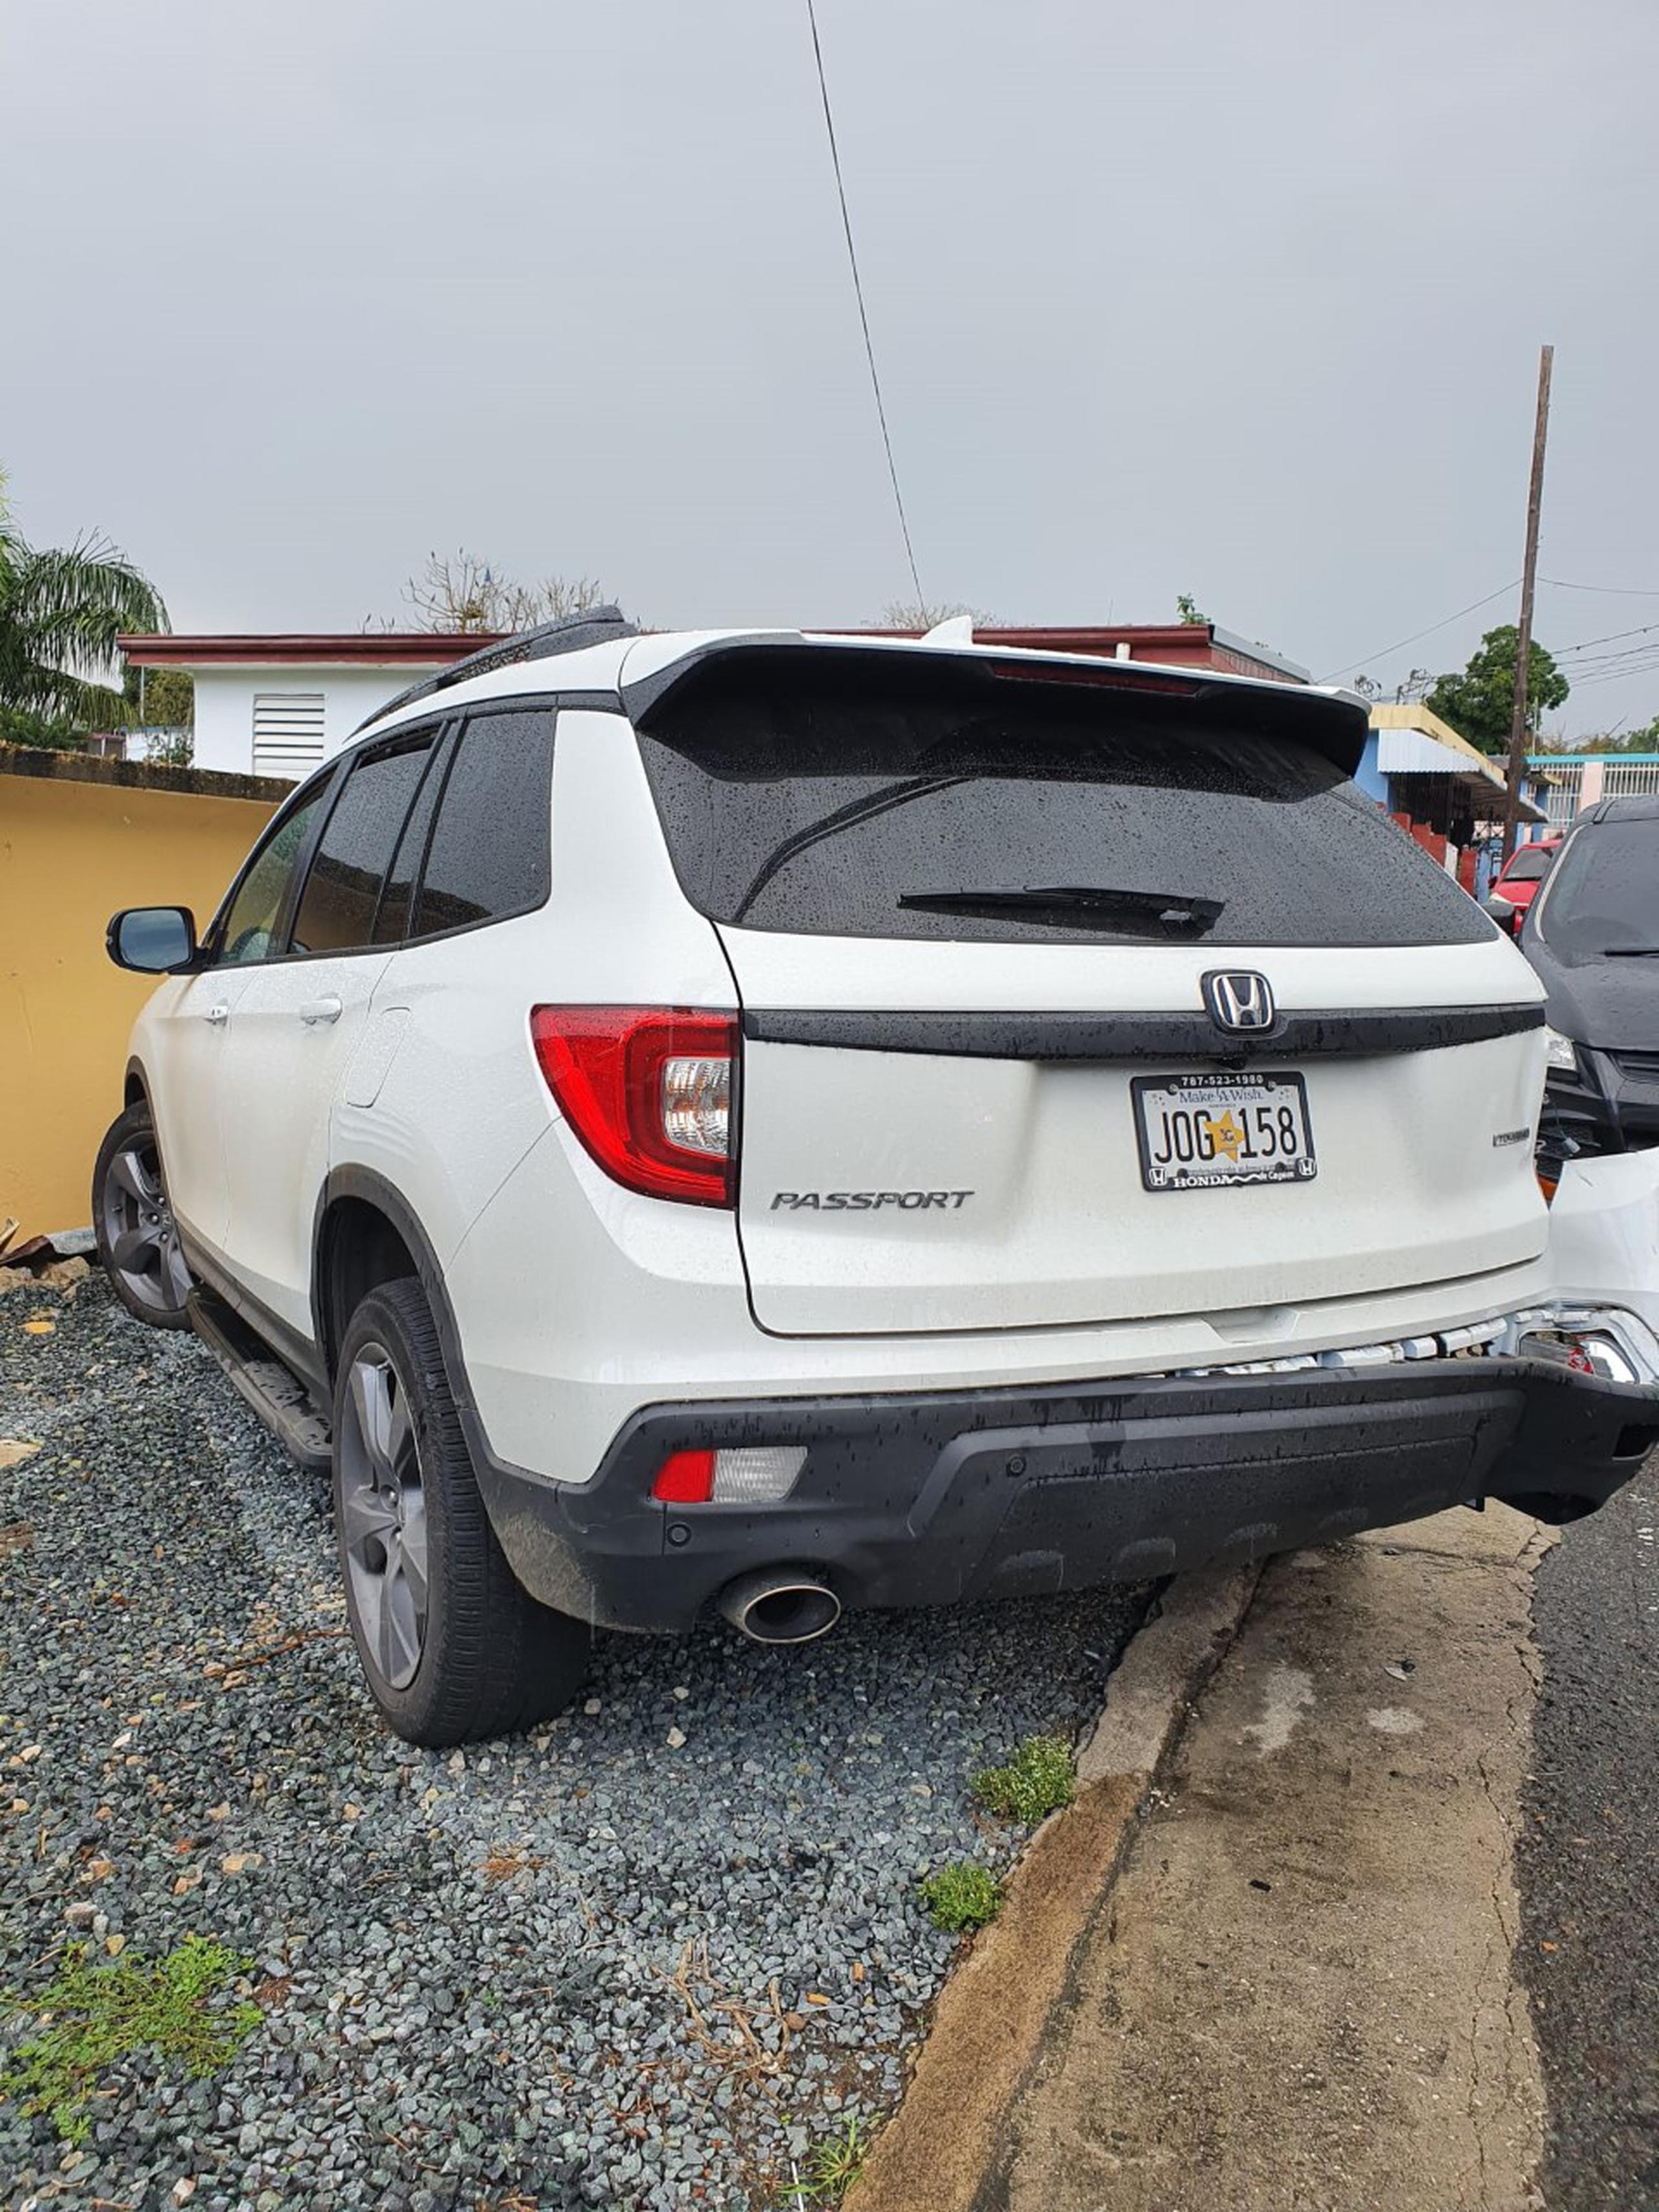 La guagua marca Honda Passport, del 2021, propiedad de la legisladura municipal Ana E. Ponce Rosa, fue recuperada cerca del kilómetro 6.1 de la carretera PR-730, en el barrio Buena Vista en Cayey.